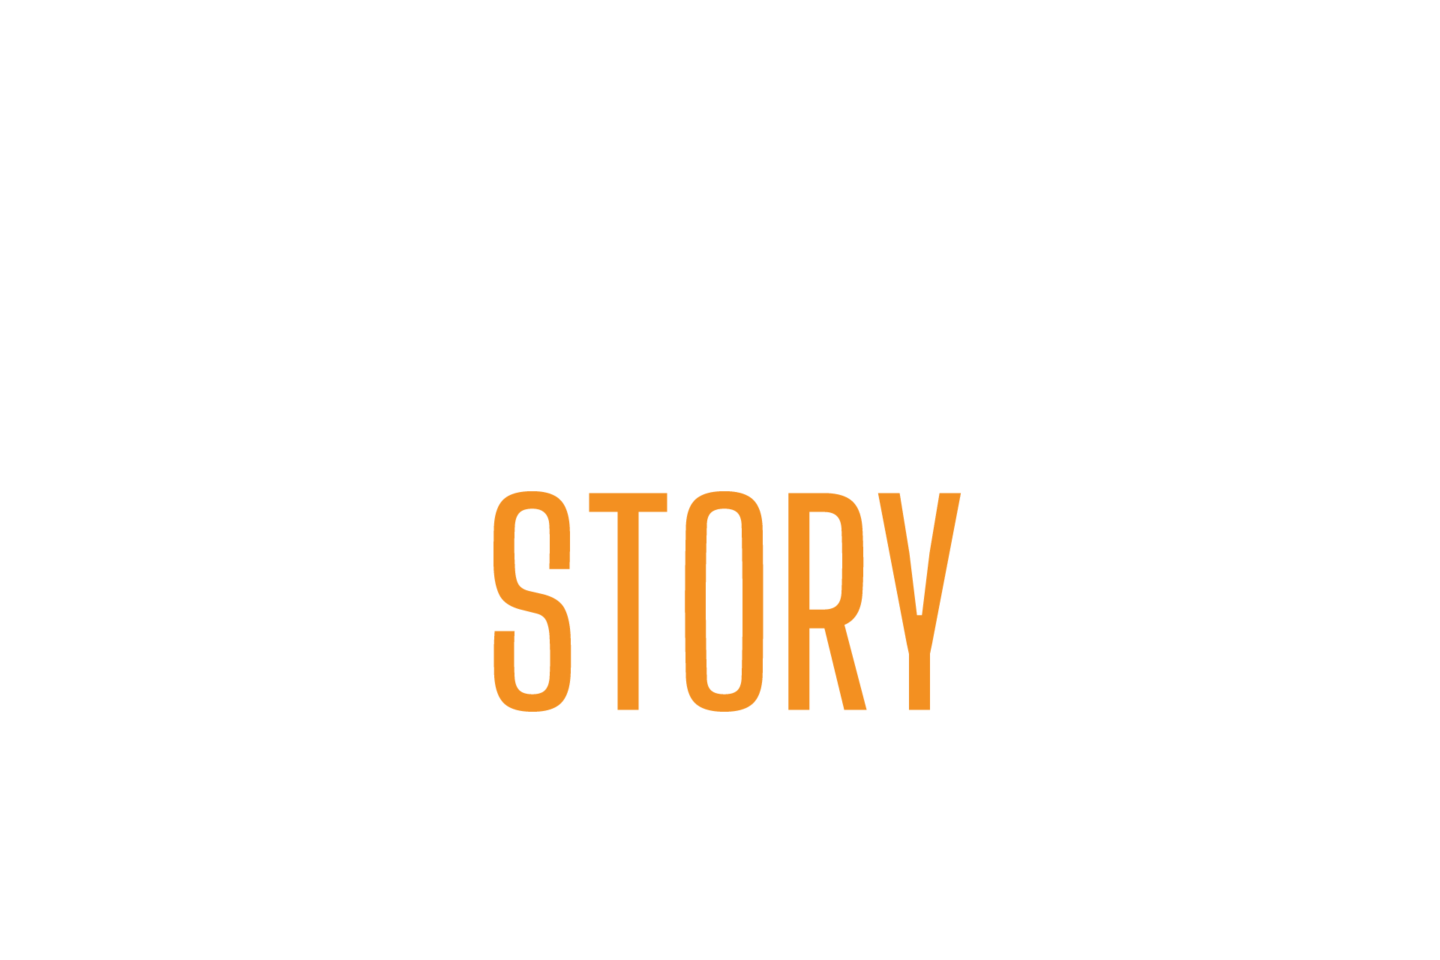 Chankko Story